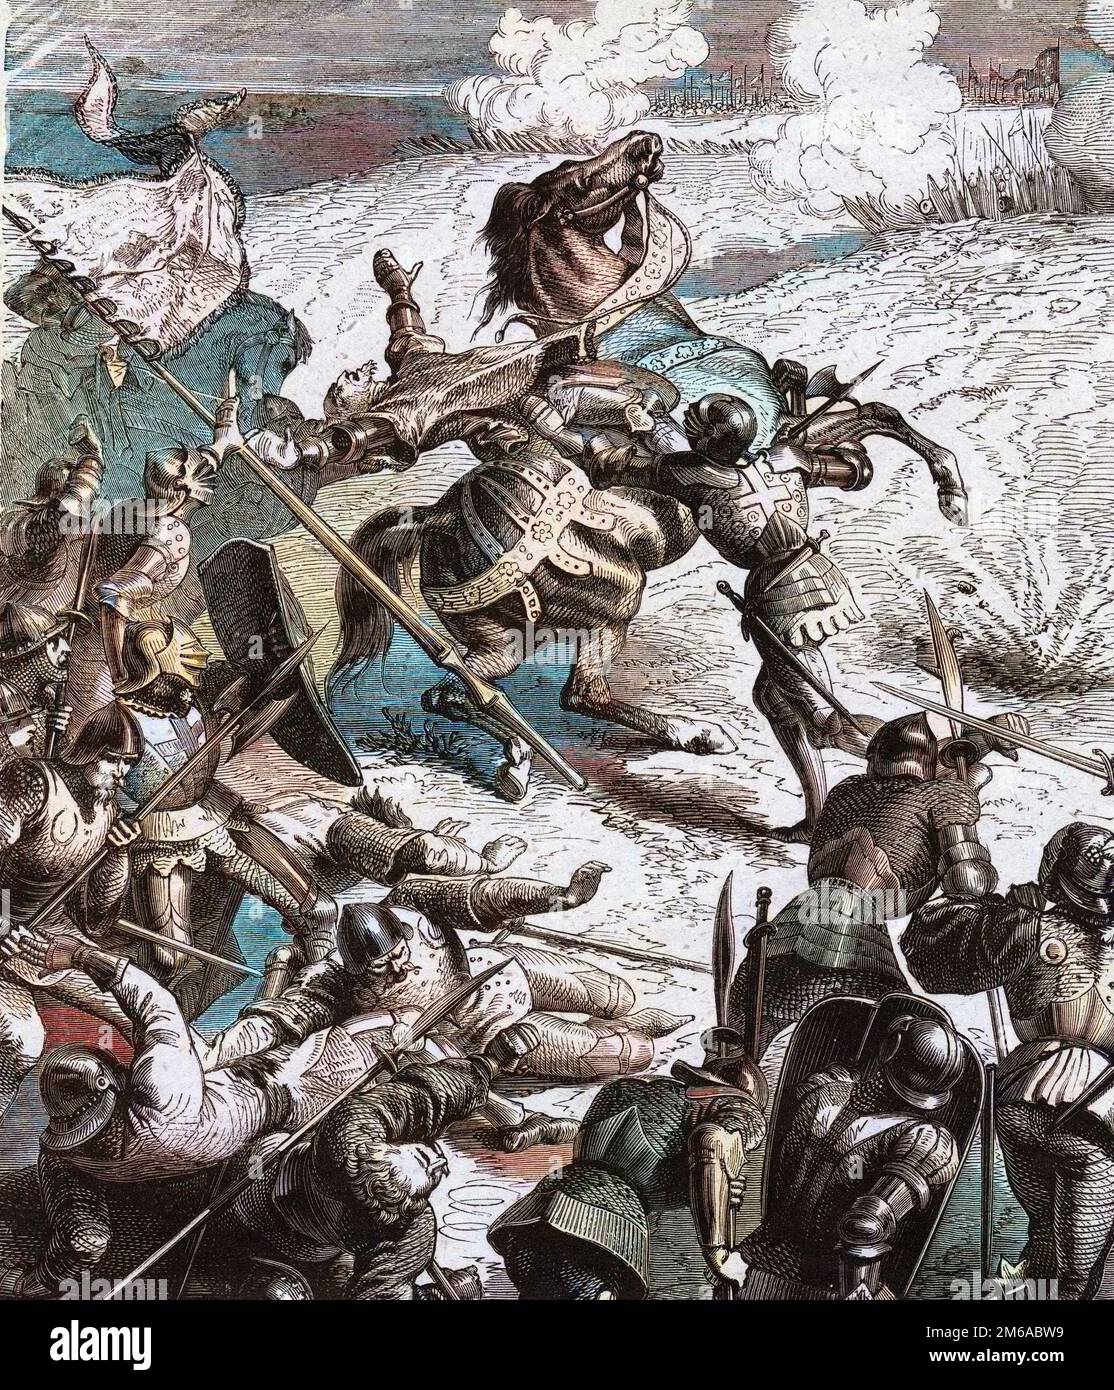 Bataille de Castillon gagnee par le Jean d'Orleans ou Jean comte de Dunois dit le batard d'Orleans (1402-1468) sur les anglais commandes par Lord Talbot, le 17 juillet 1453. Gravure de 1891 Stock Photo